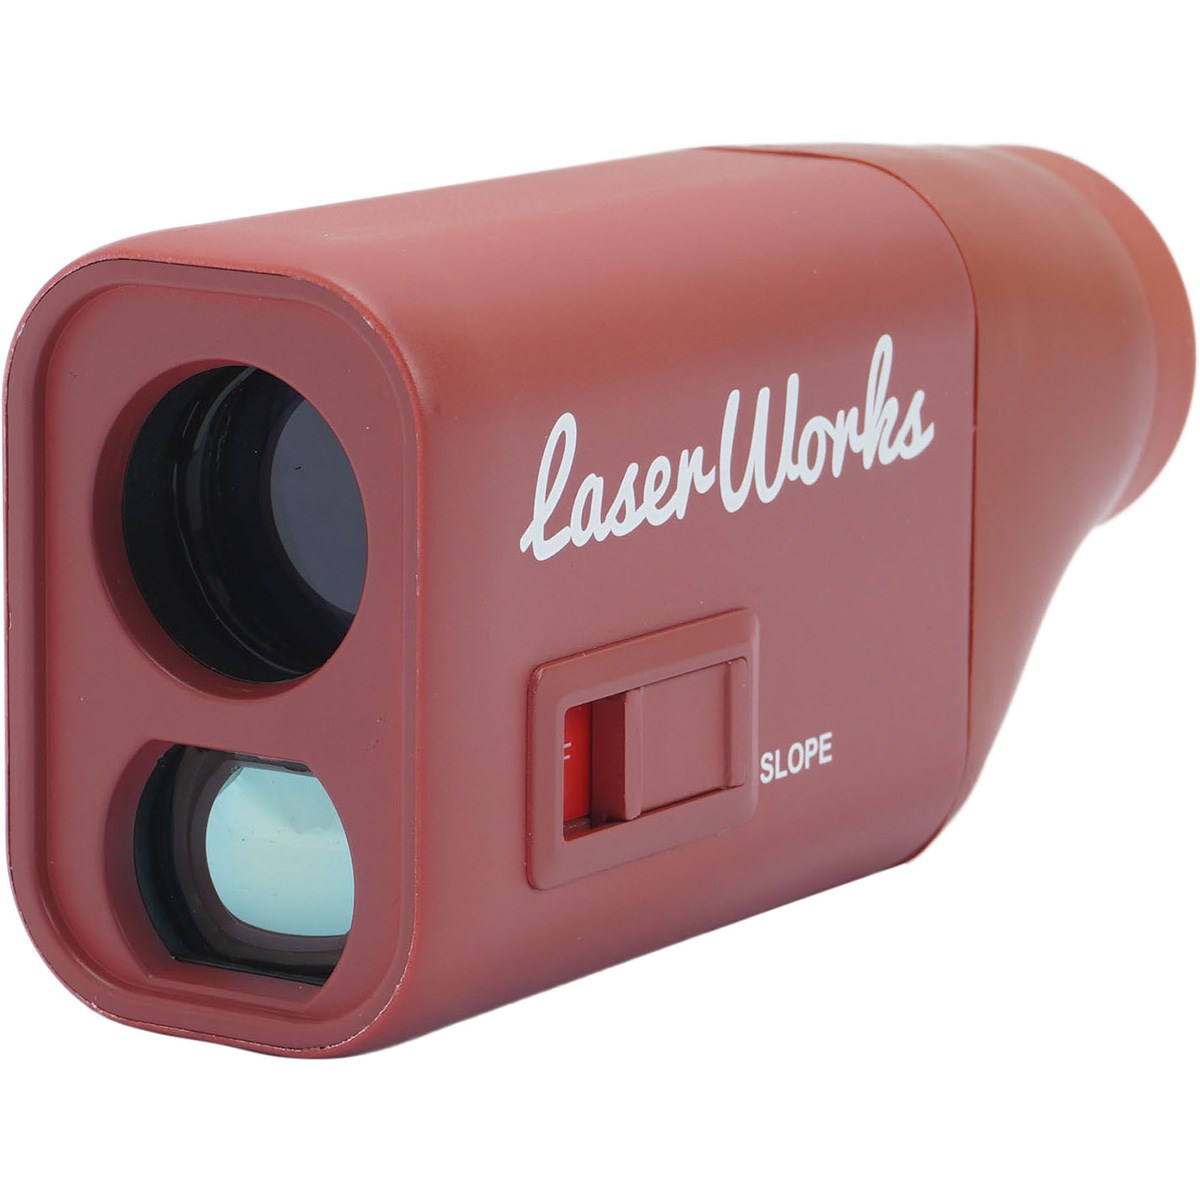 レーザーワークス Laser Works コンパクト距離測定器